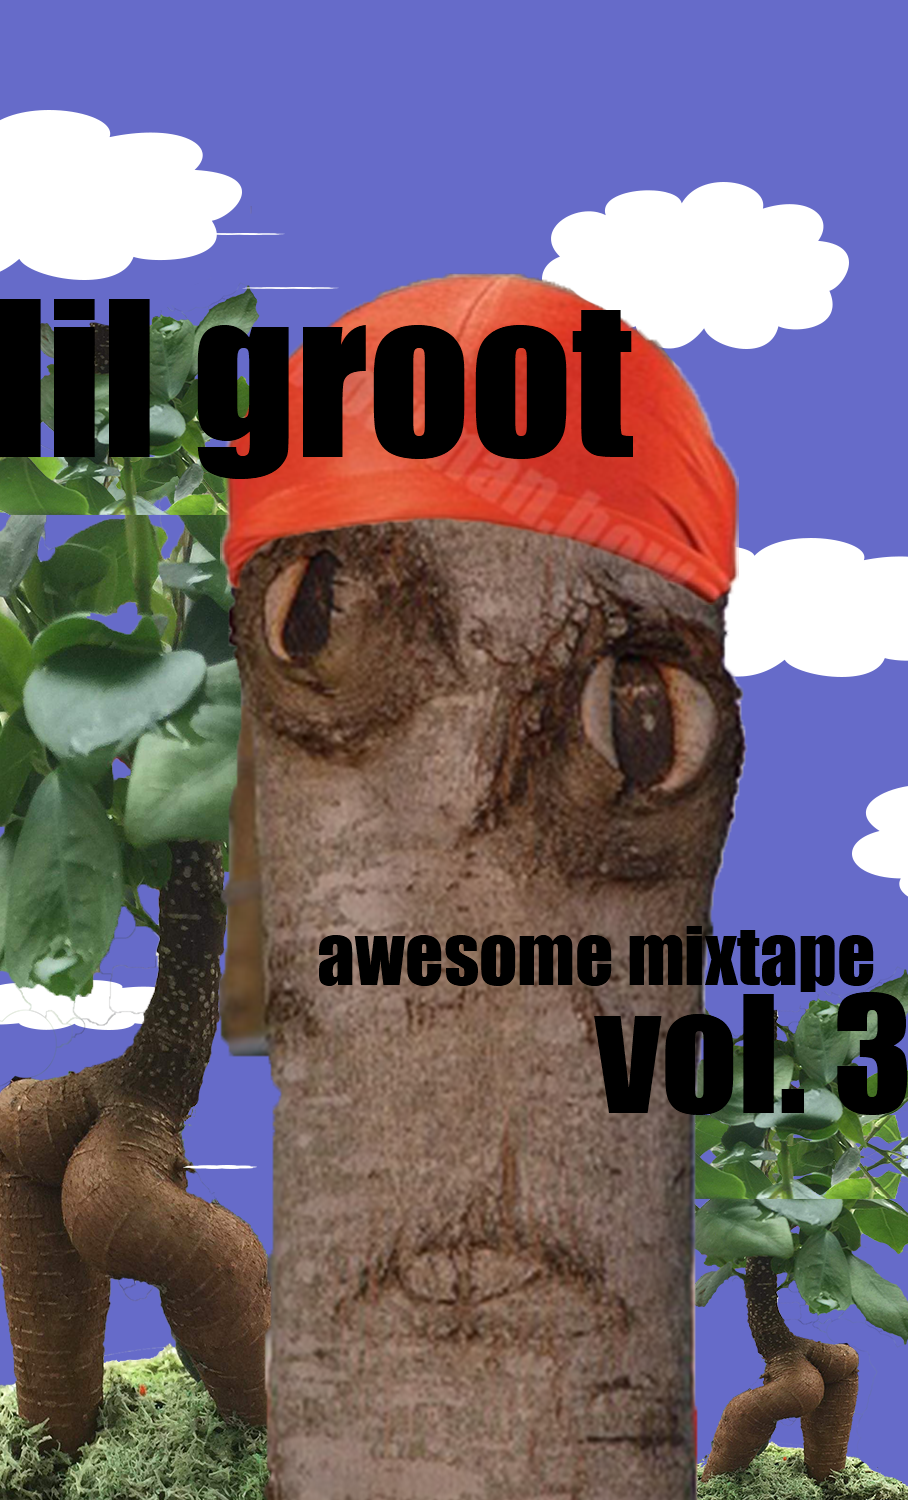 reddit memes - snout - Til groot awesome mixtape